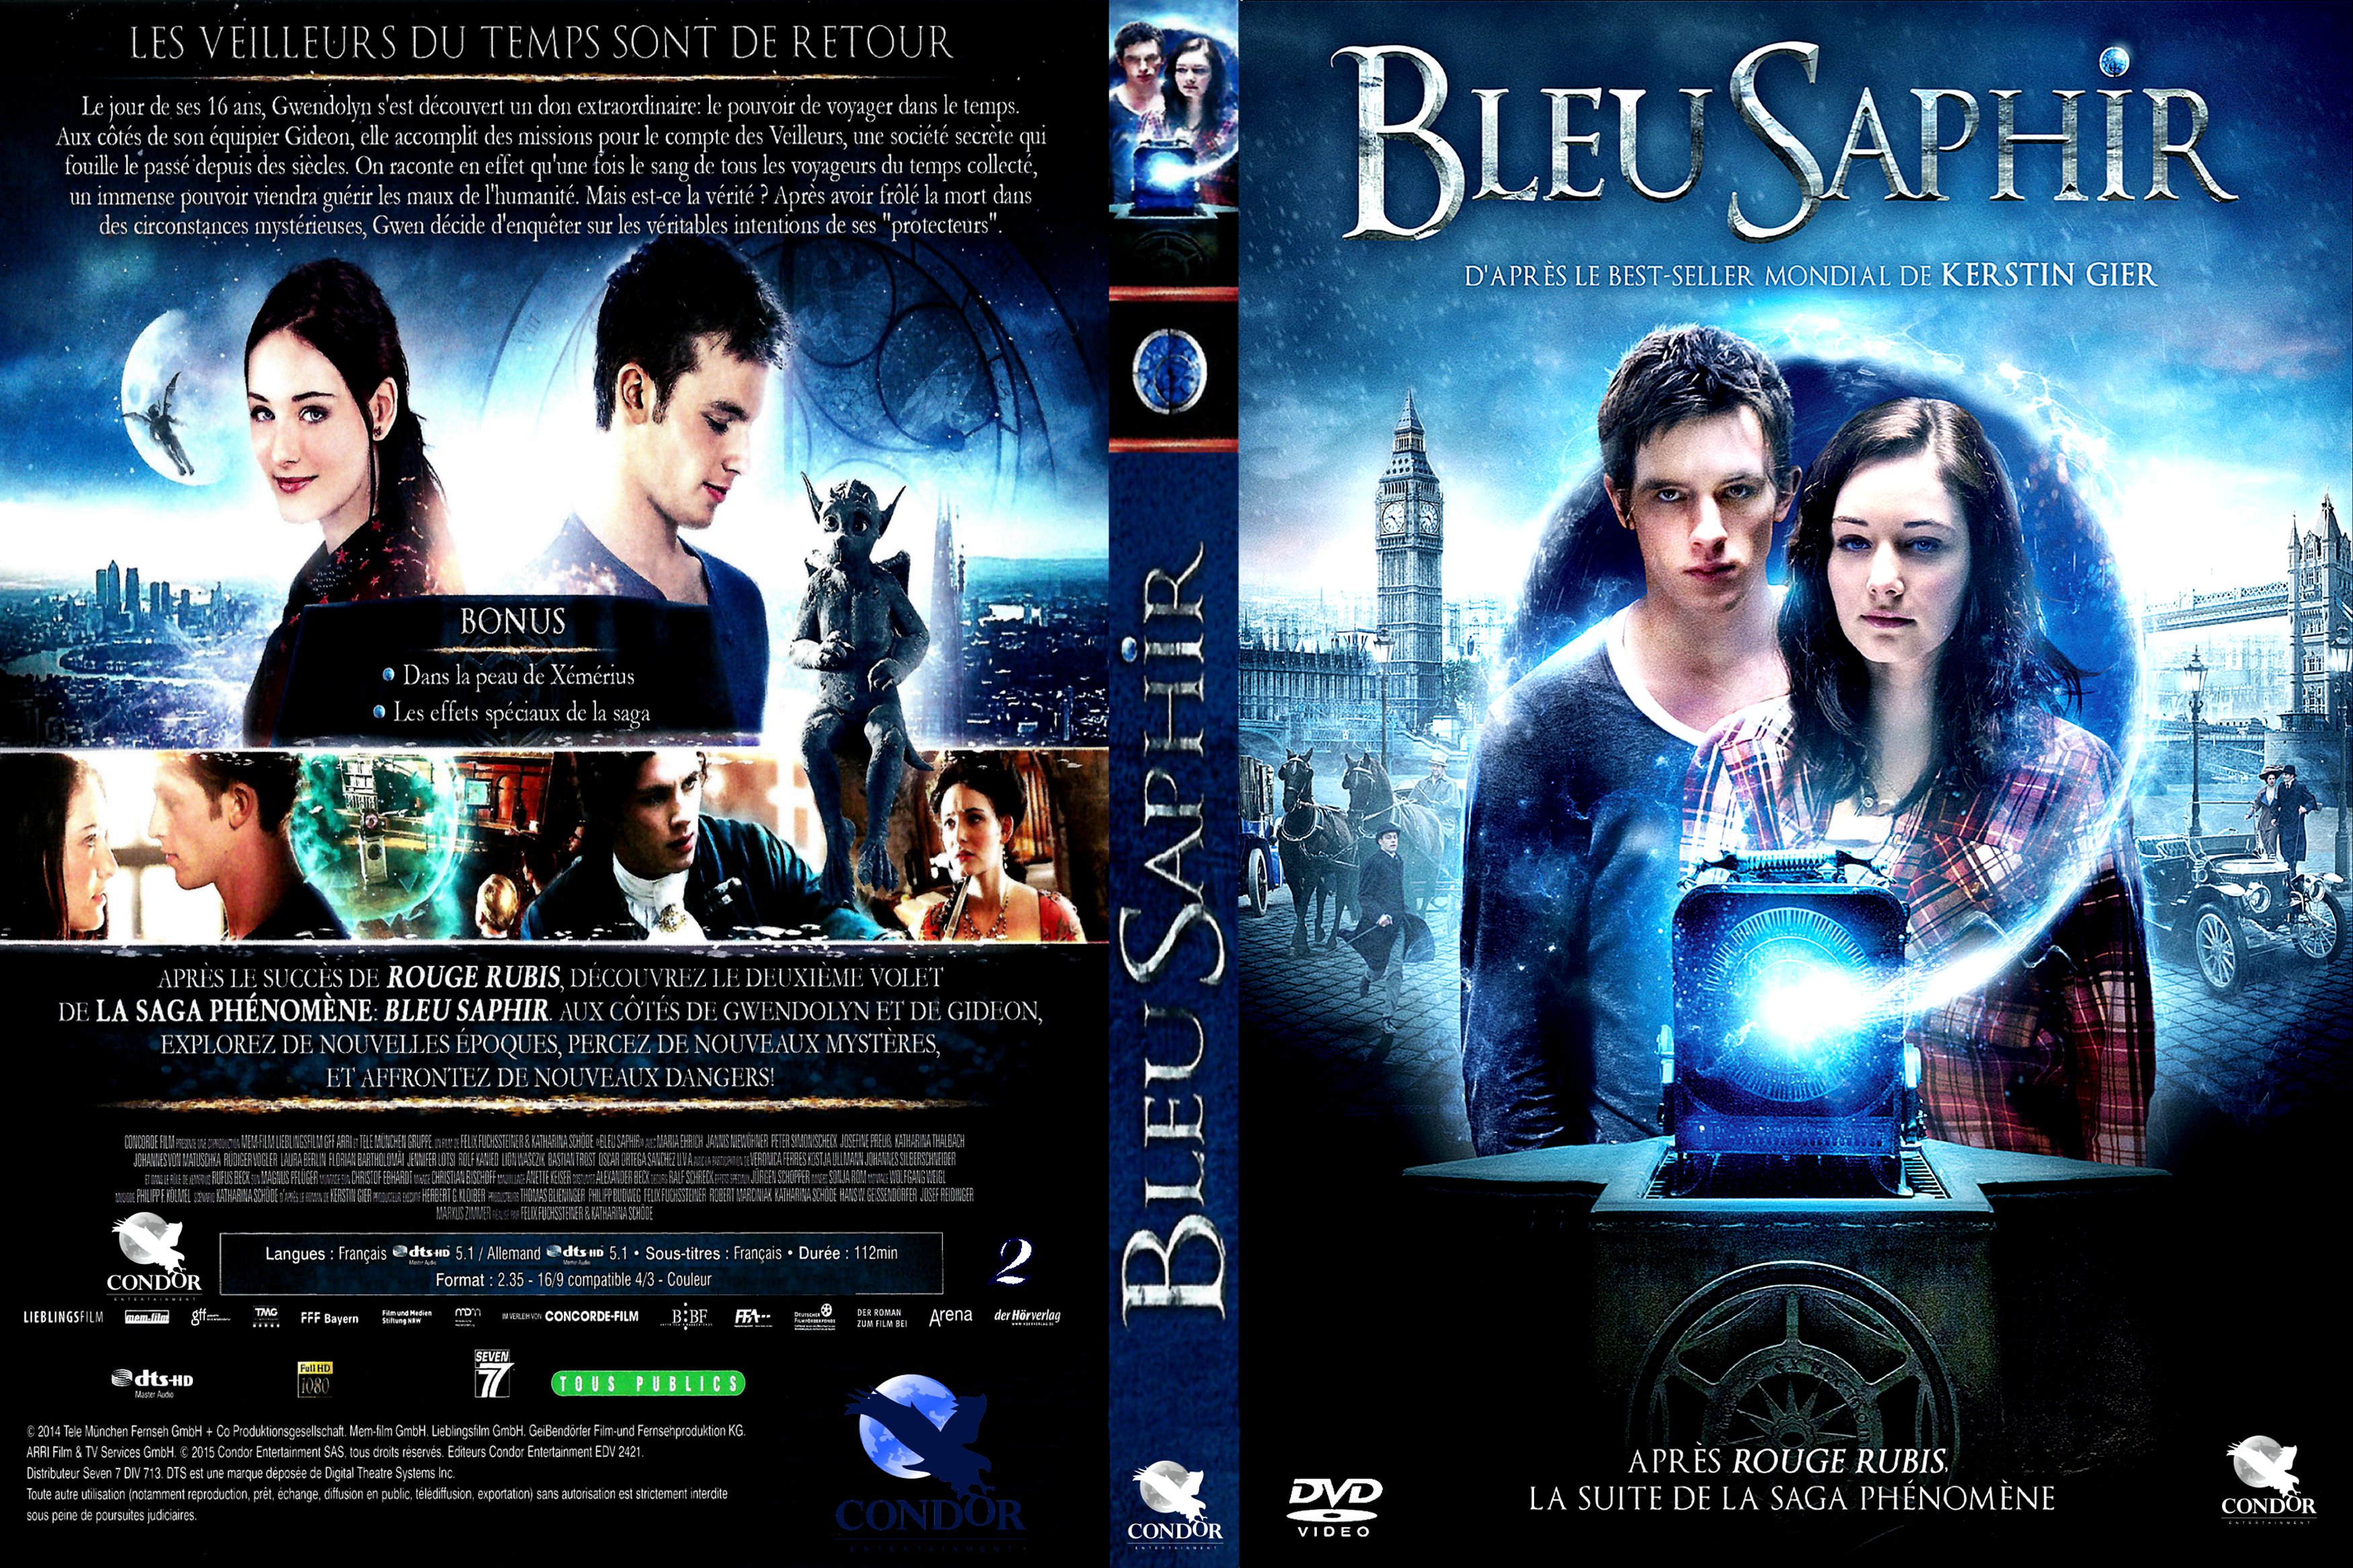 Jaquette DVD Bleu Saphir custom